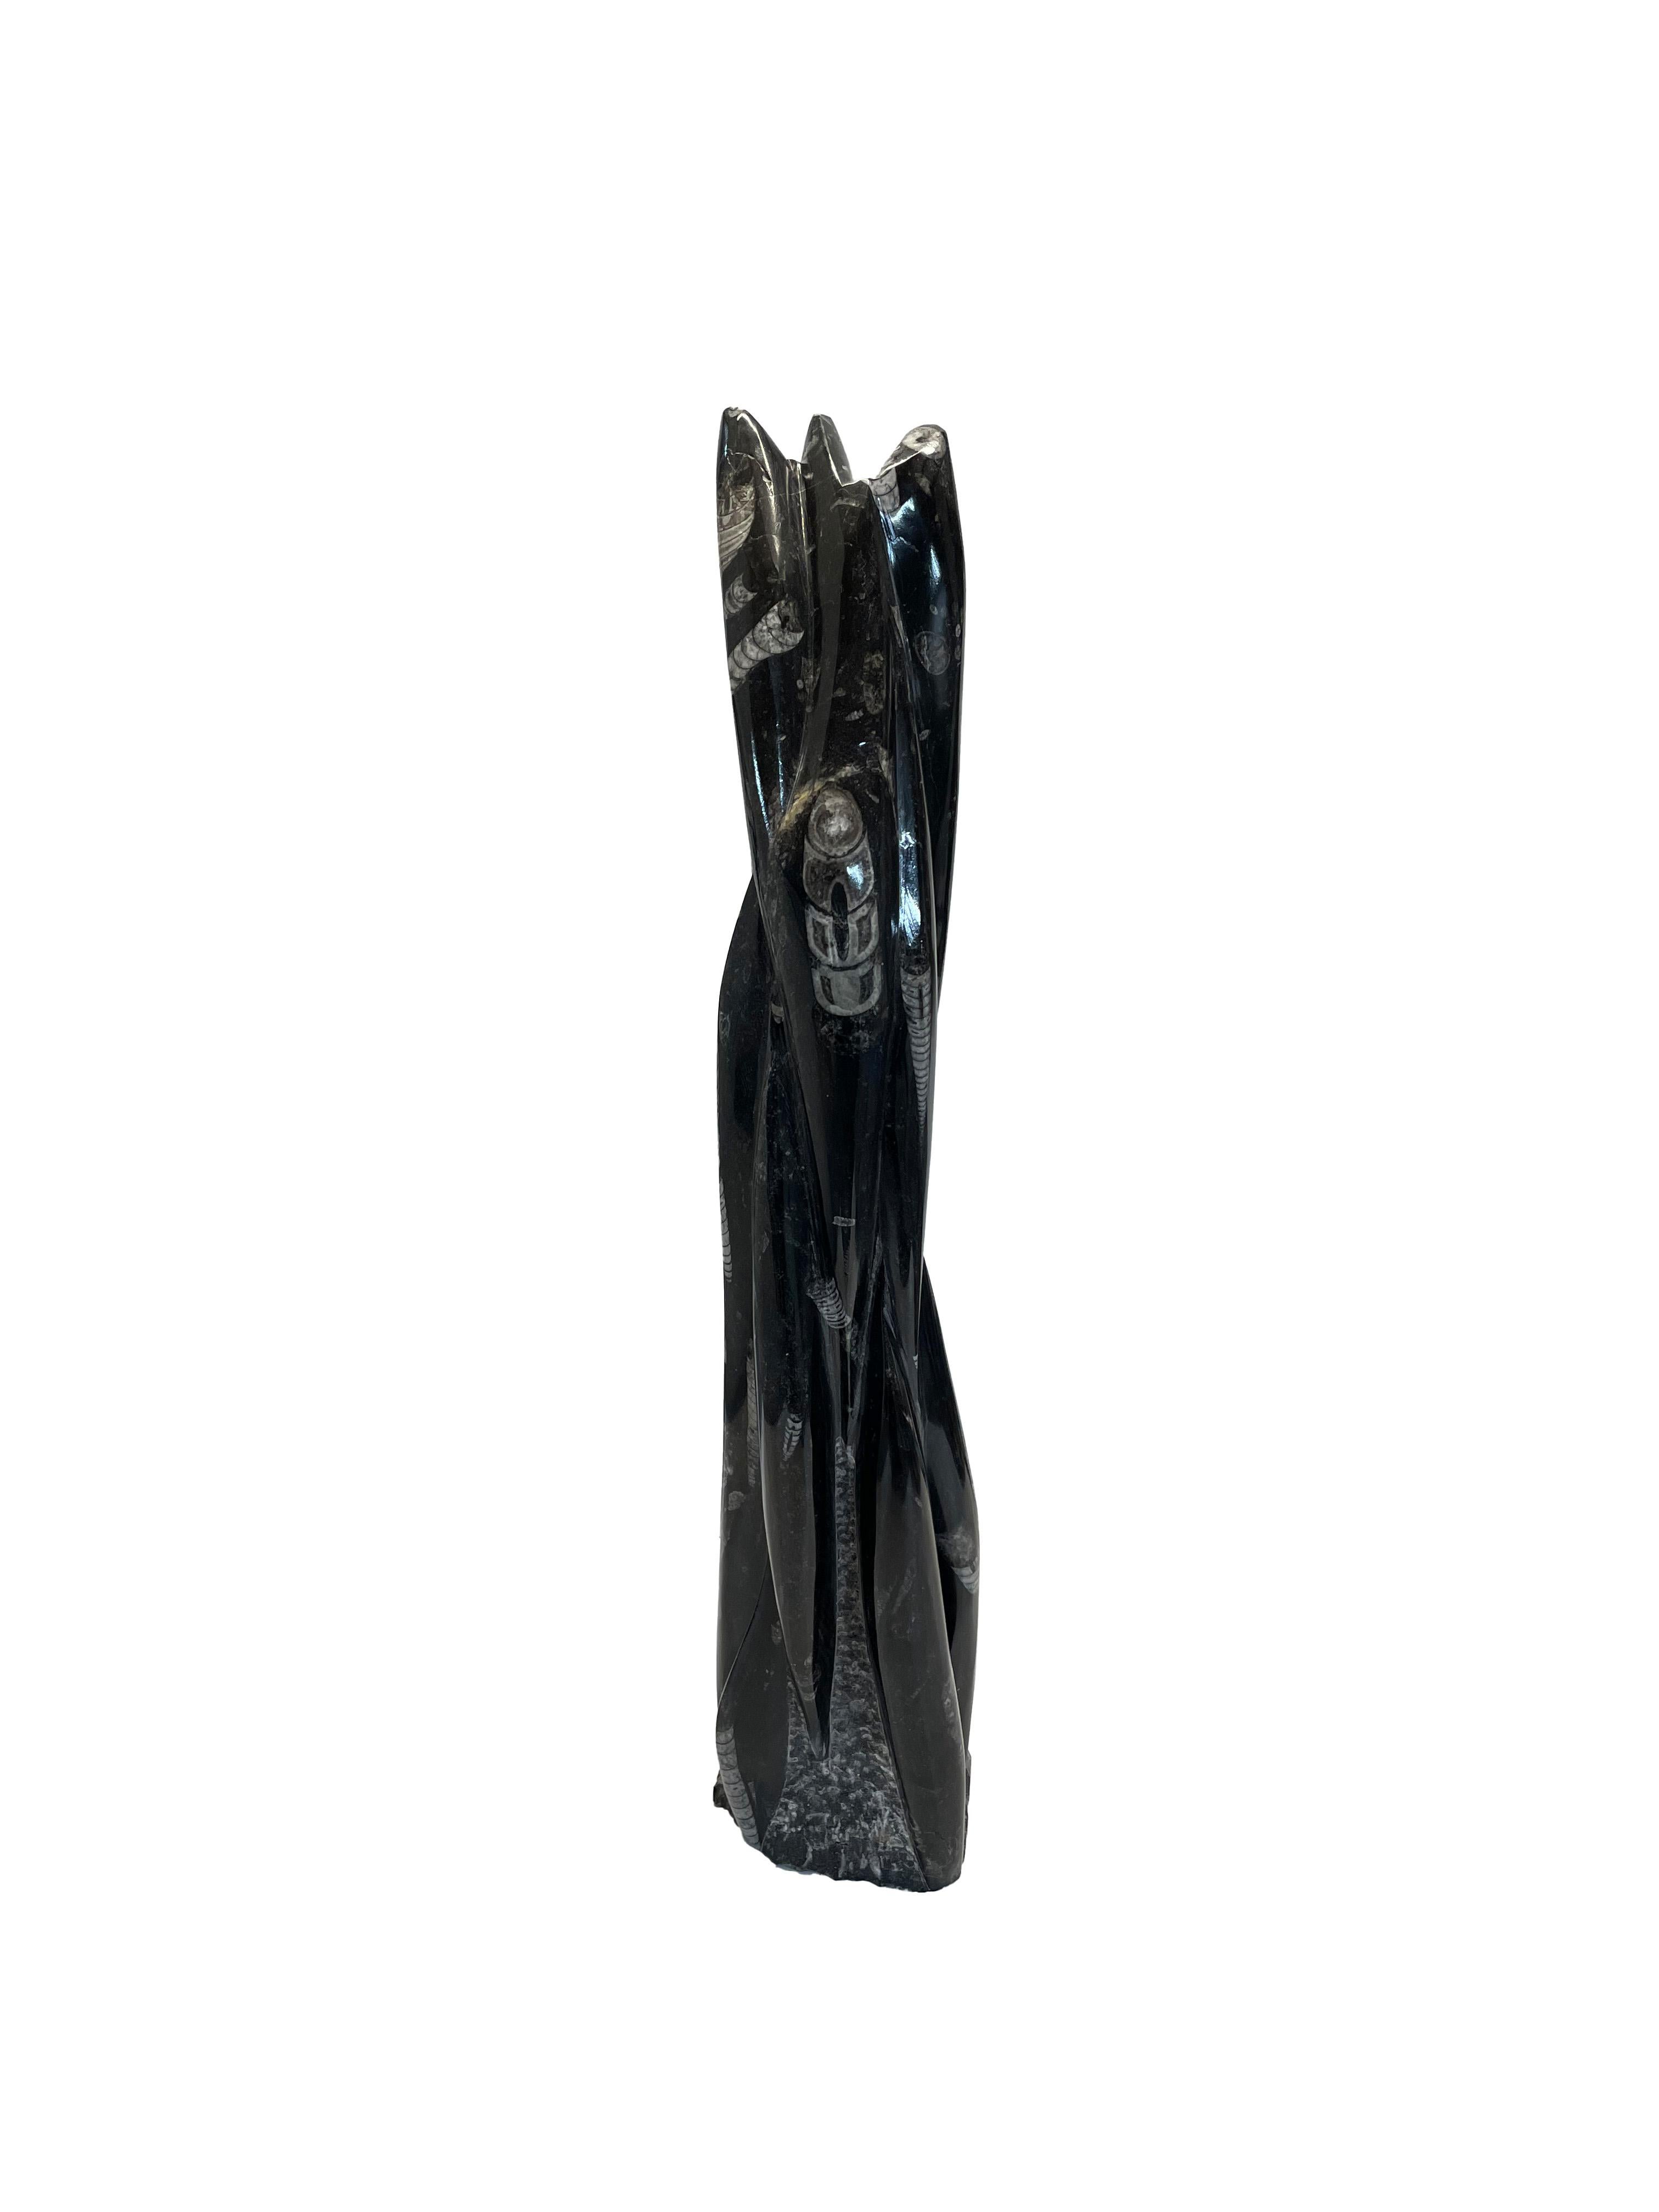 Einzigartige Granitskulptur mit eingebetteten Fossilien, die mehr als 280 Millionen Jahre alt sind.
Dieser wunderschöne, schwarze Granitturm mit seinen schönen Orthoceras-Fossilien ist eine Skulptur, die jeden Betrachter in ihren Bann zieht.

Die